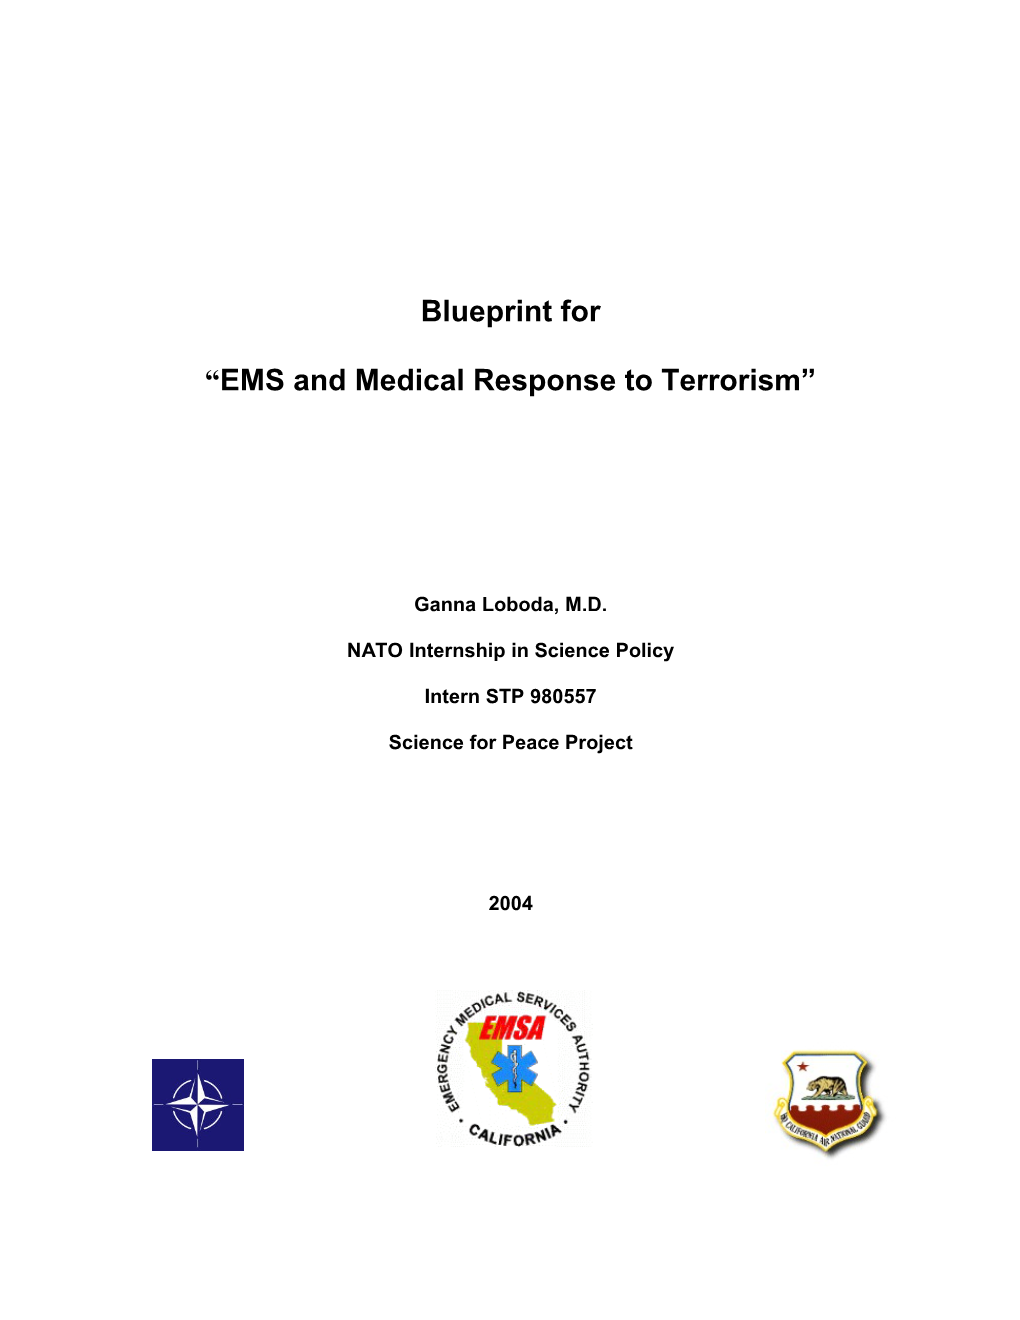 NATO Grant Final Report Notes